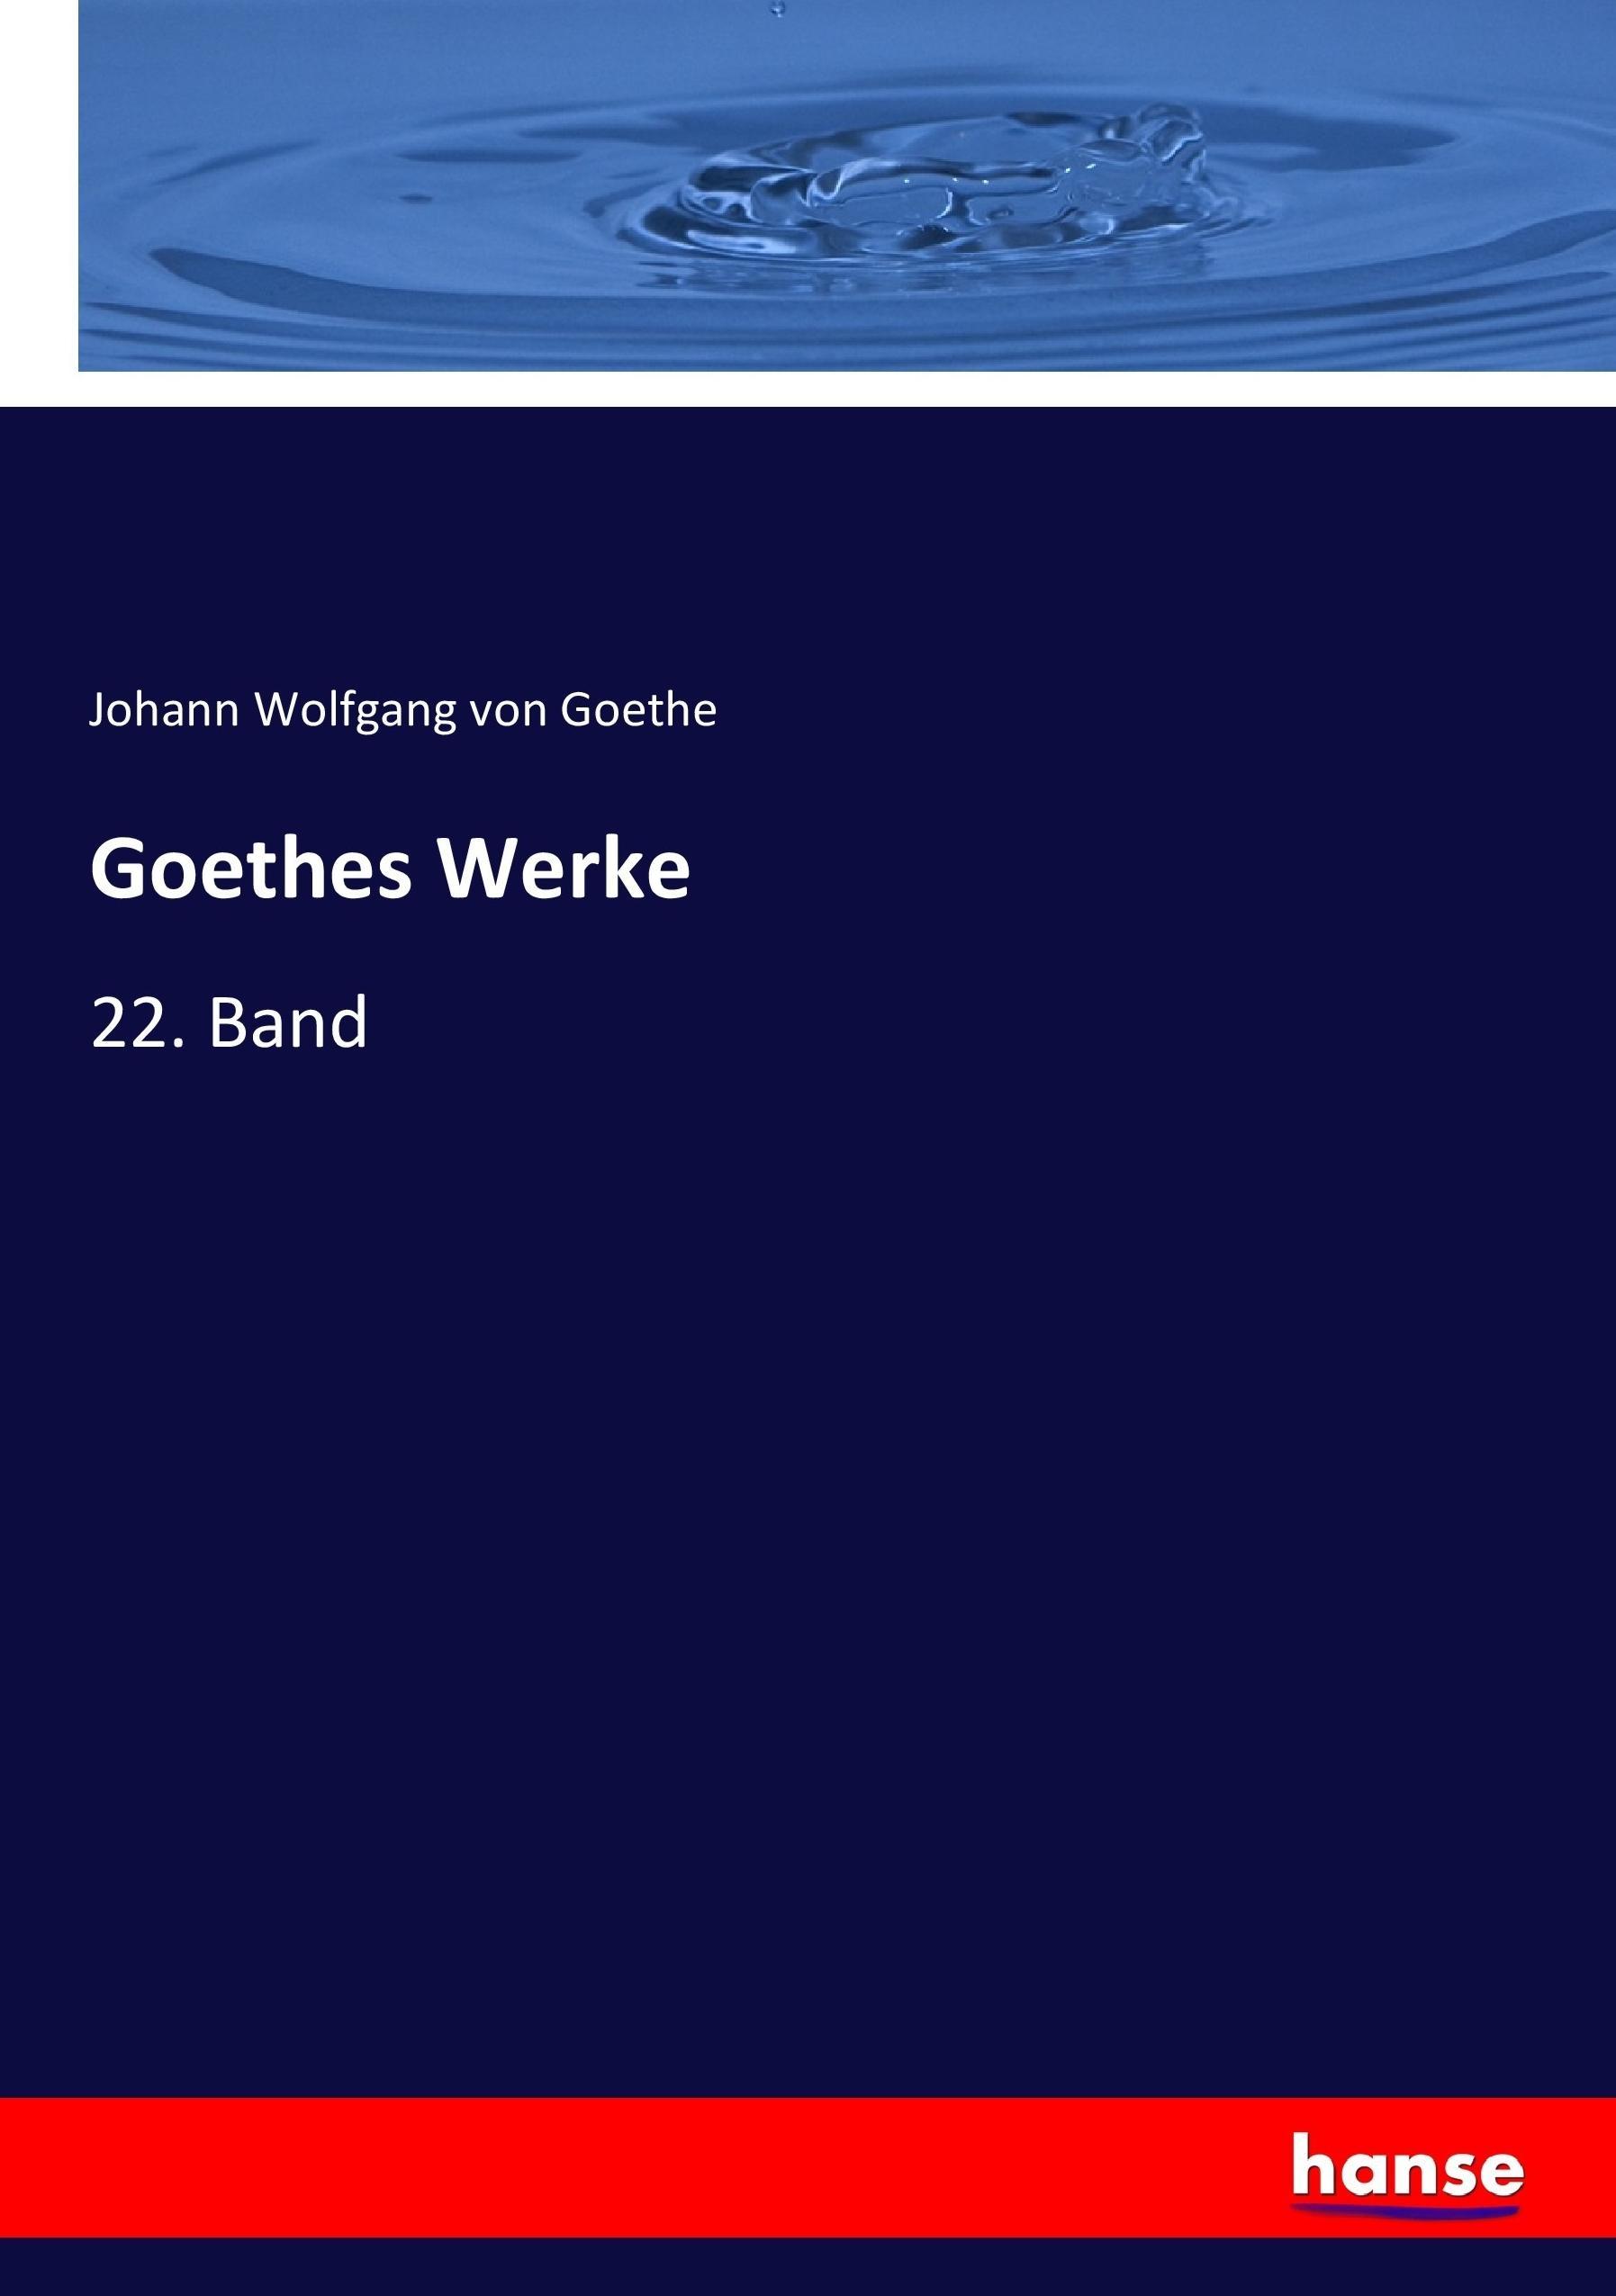 Goethes Werke | 22. Band | Johann Wolfgang von Goethe | Taschenbuch | Paperback | 392 S. | Deutsch | 2017 | hansebooks | EAN 9783744703796 - Goethe, Johann Wolfgang von